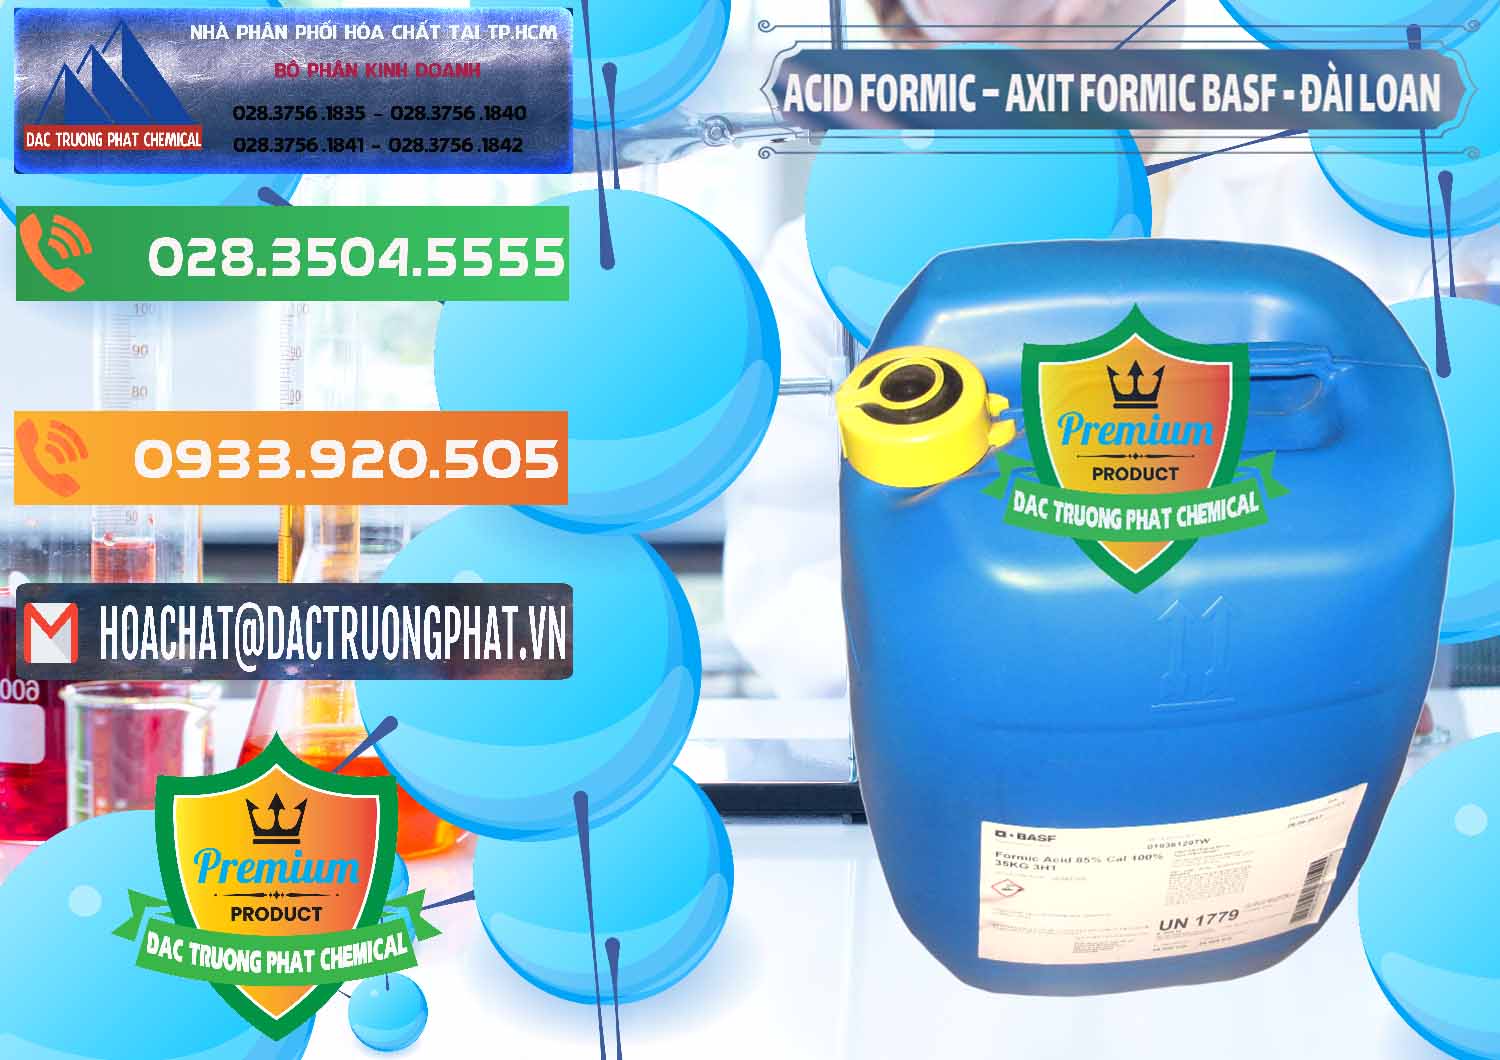 Nơi chuyên kinh doanh - bán Acid Formic - Axit Formic 85% BASF Đài Loan Taiwan - 0027 - Cty chuyên nhập khẩu - cung cấp hóa chất tại TP.HCM - hoachatxulynuoc.com.vn